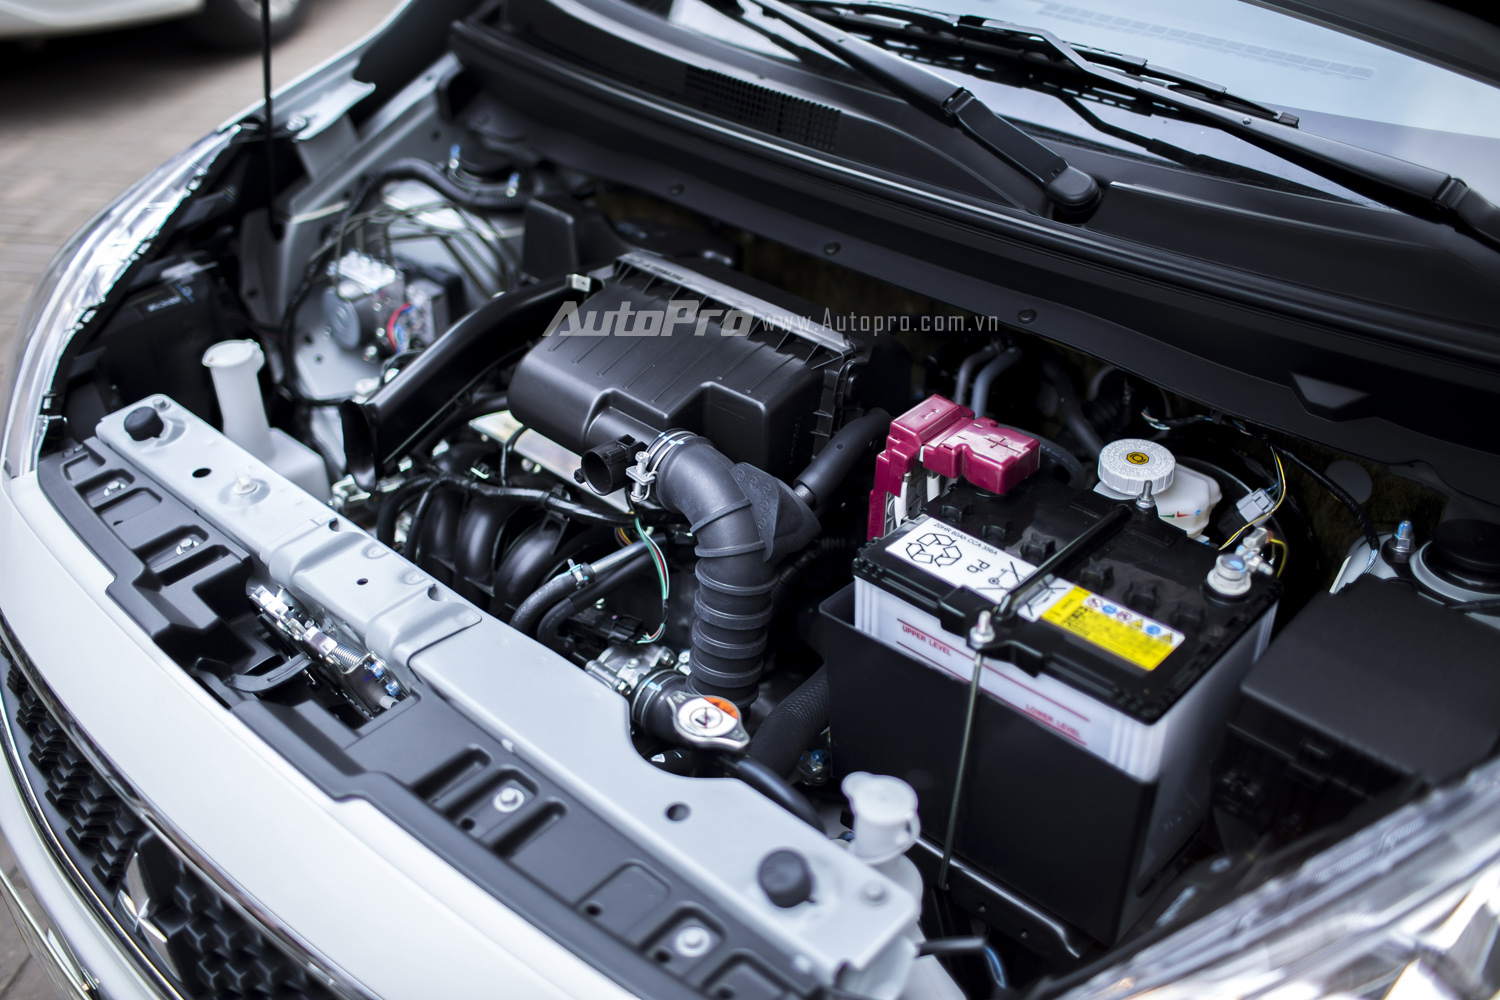 
Mitsubishi Mirage 2016 được trang bị động cơ xăng 3 xy-lanh, dung tích 1,2 lít, có khả năng sản sinh công suất tối đa 78 mã lực tại vòng tua 6.000 vòng/phút và mô-men xoắn cực đại 100 Nm tại vòng tua máy 4.000 vòng/phút.
